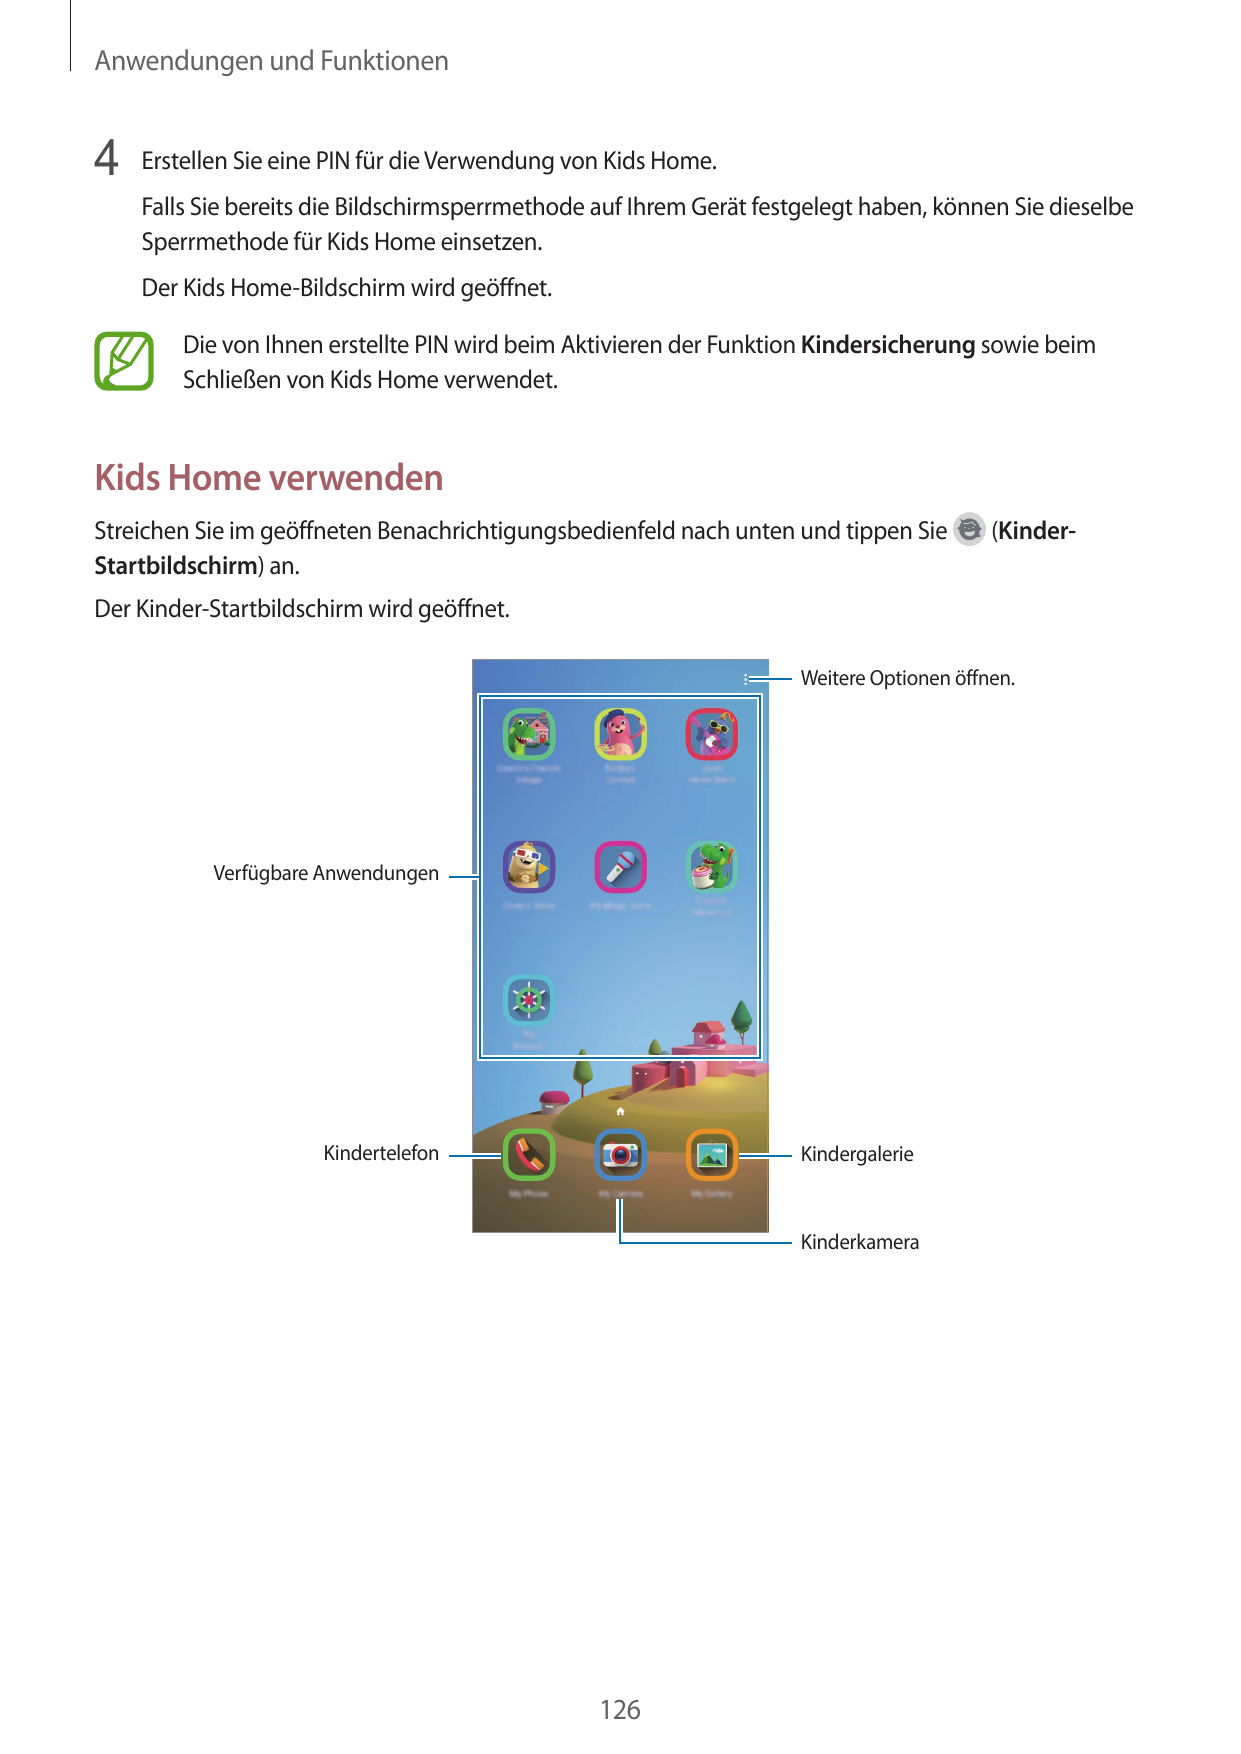 Anwendungen und Funktionen4 Erstellen Sie eine PIN für die Verwendung von Kids Home.Falls Sie bereits die Bildschirmsperrmethode